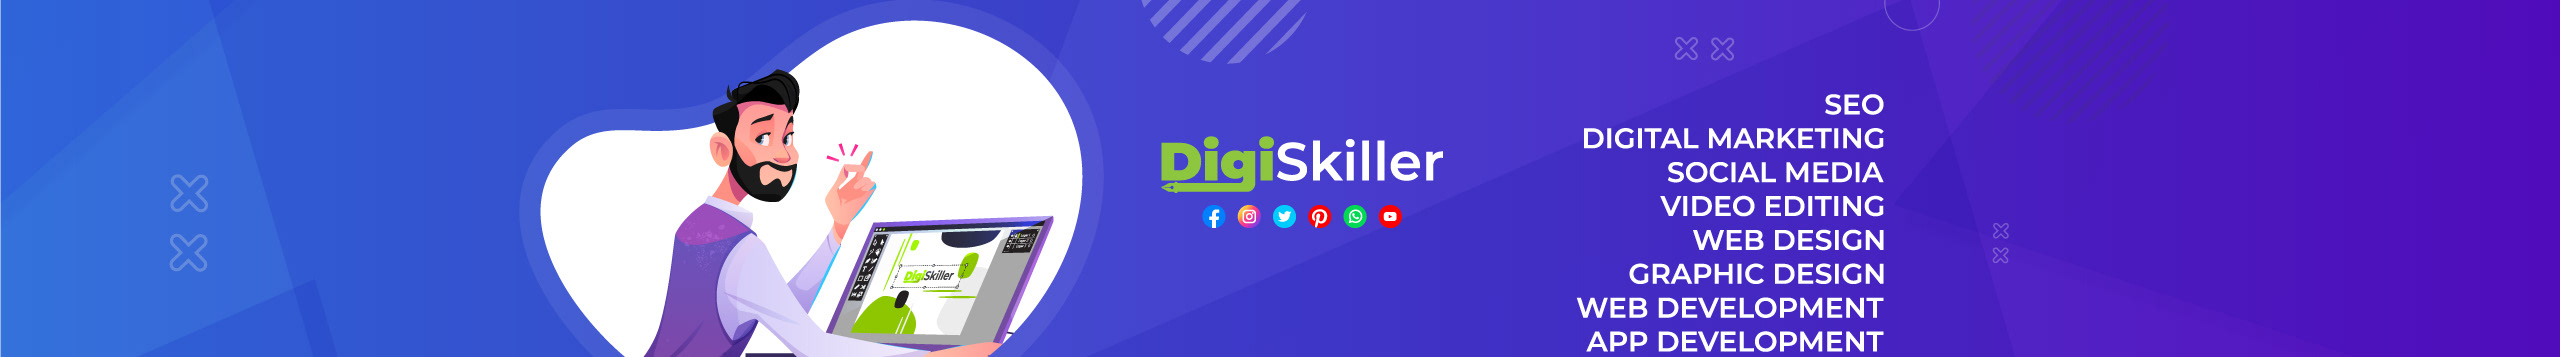 Banner de perfil de DigiSkiller Graphics